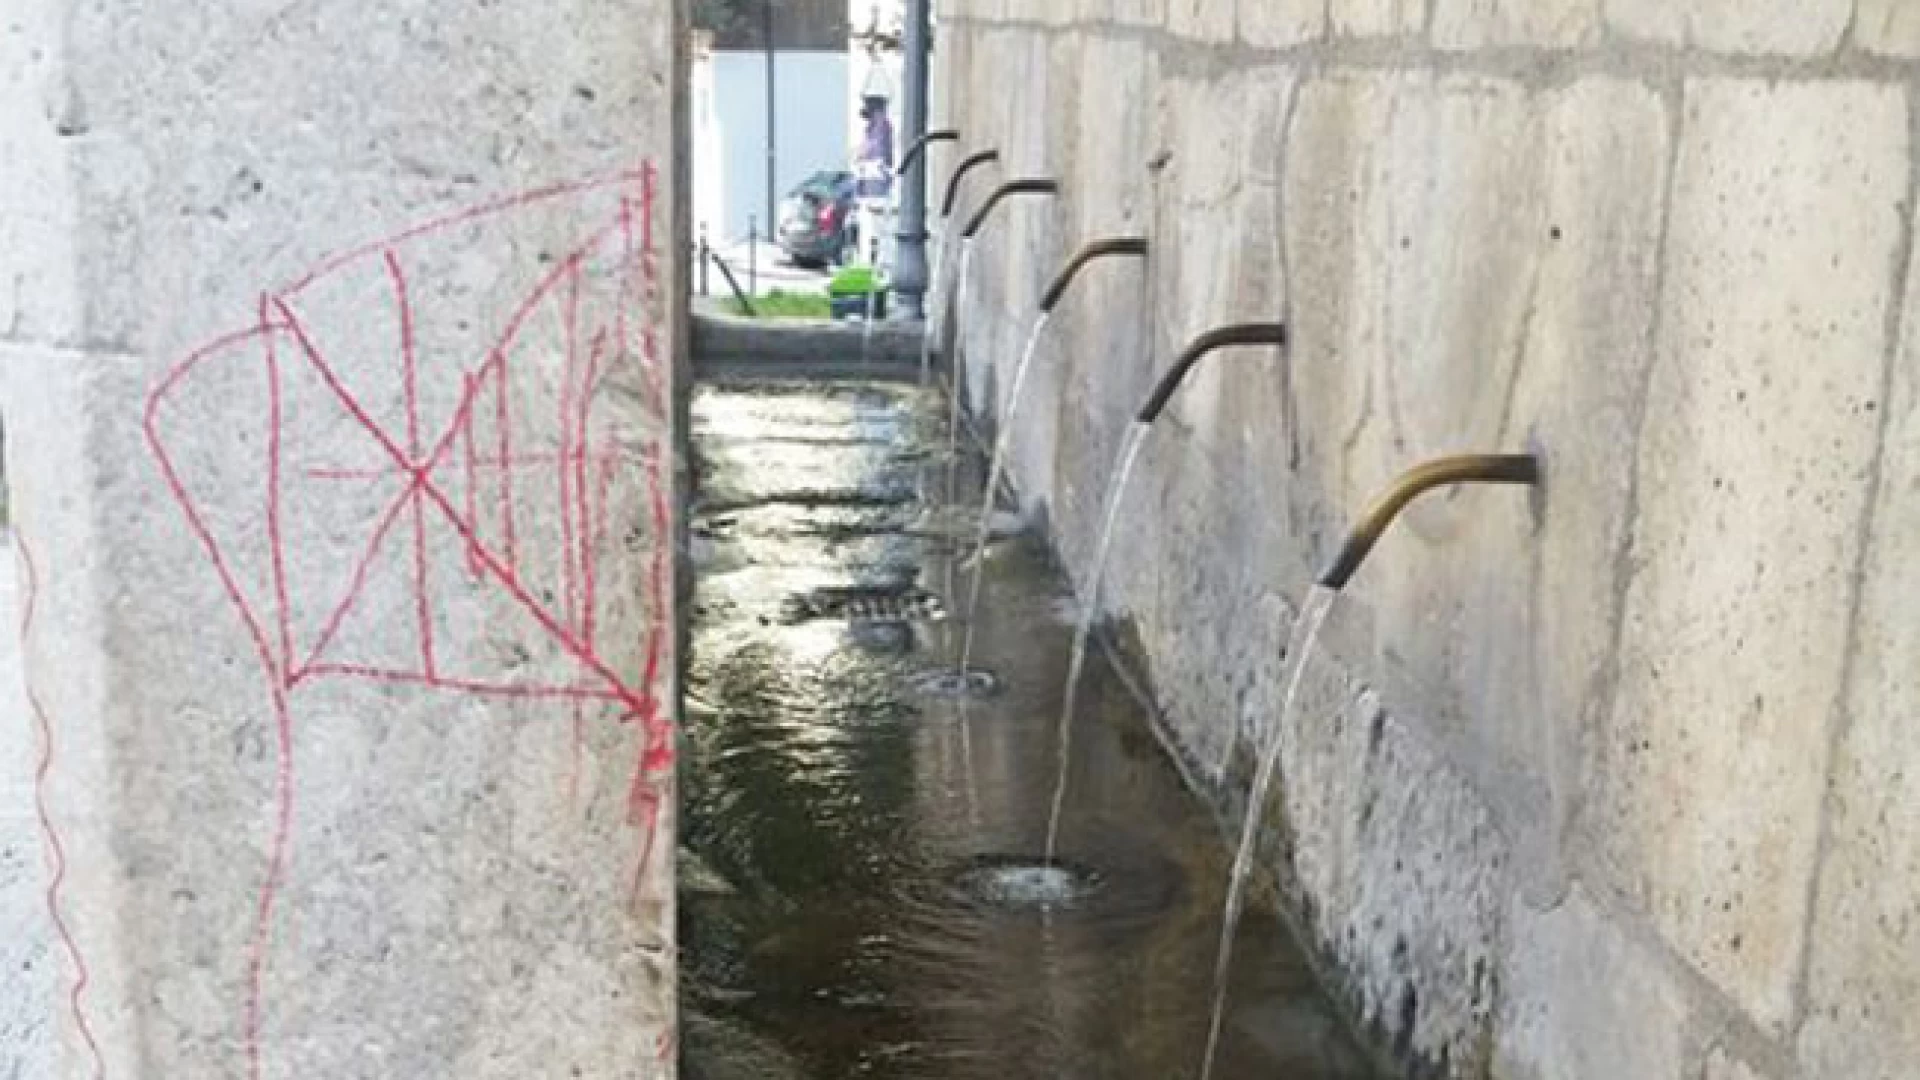 Atti di vandalismo alla Fontana Fraterna, sarebbero stati individuati gli autori dello sfregio al monumento.